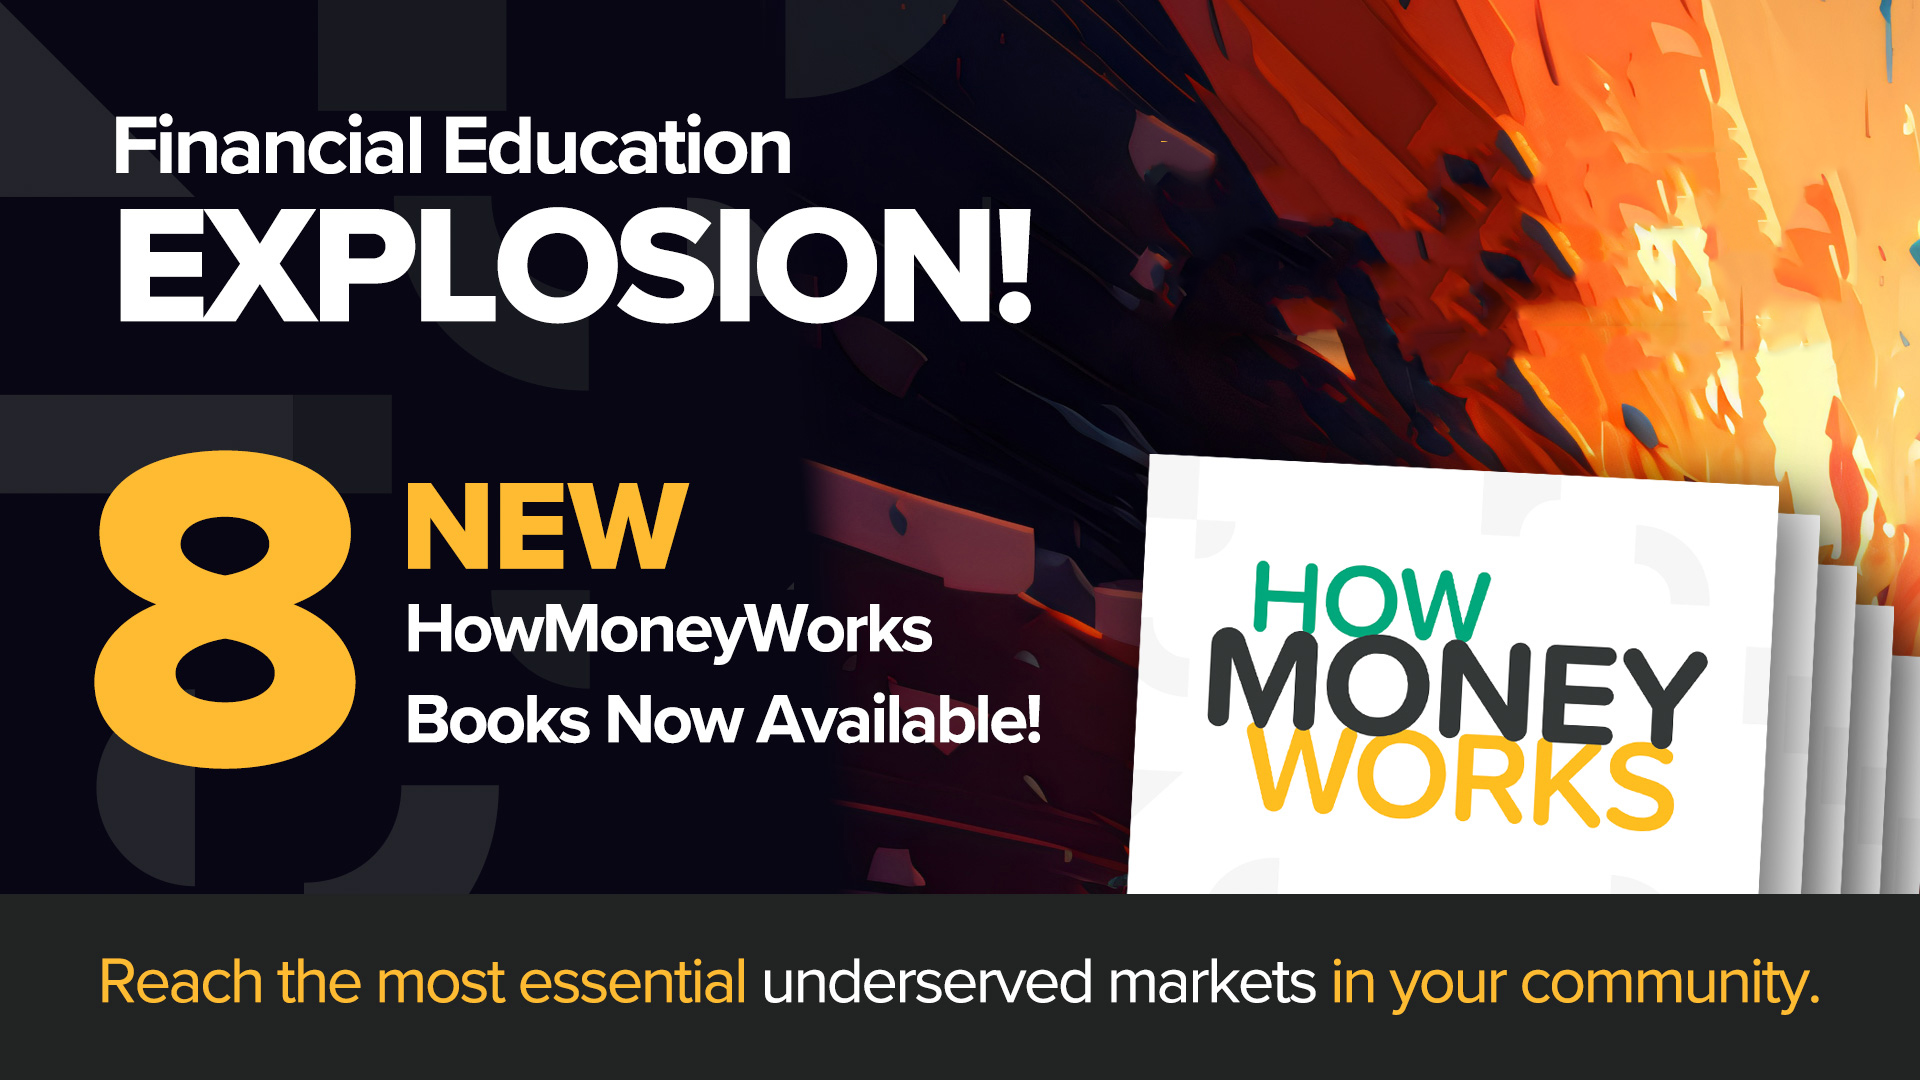 8 नई HowMoneyWorks पुस्तकें- आज हम वित्तीय साक्षरता पुस्तकों की एक विविध नई लाइनअप का अनावरण करते हैं